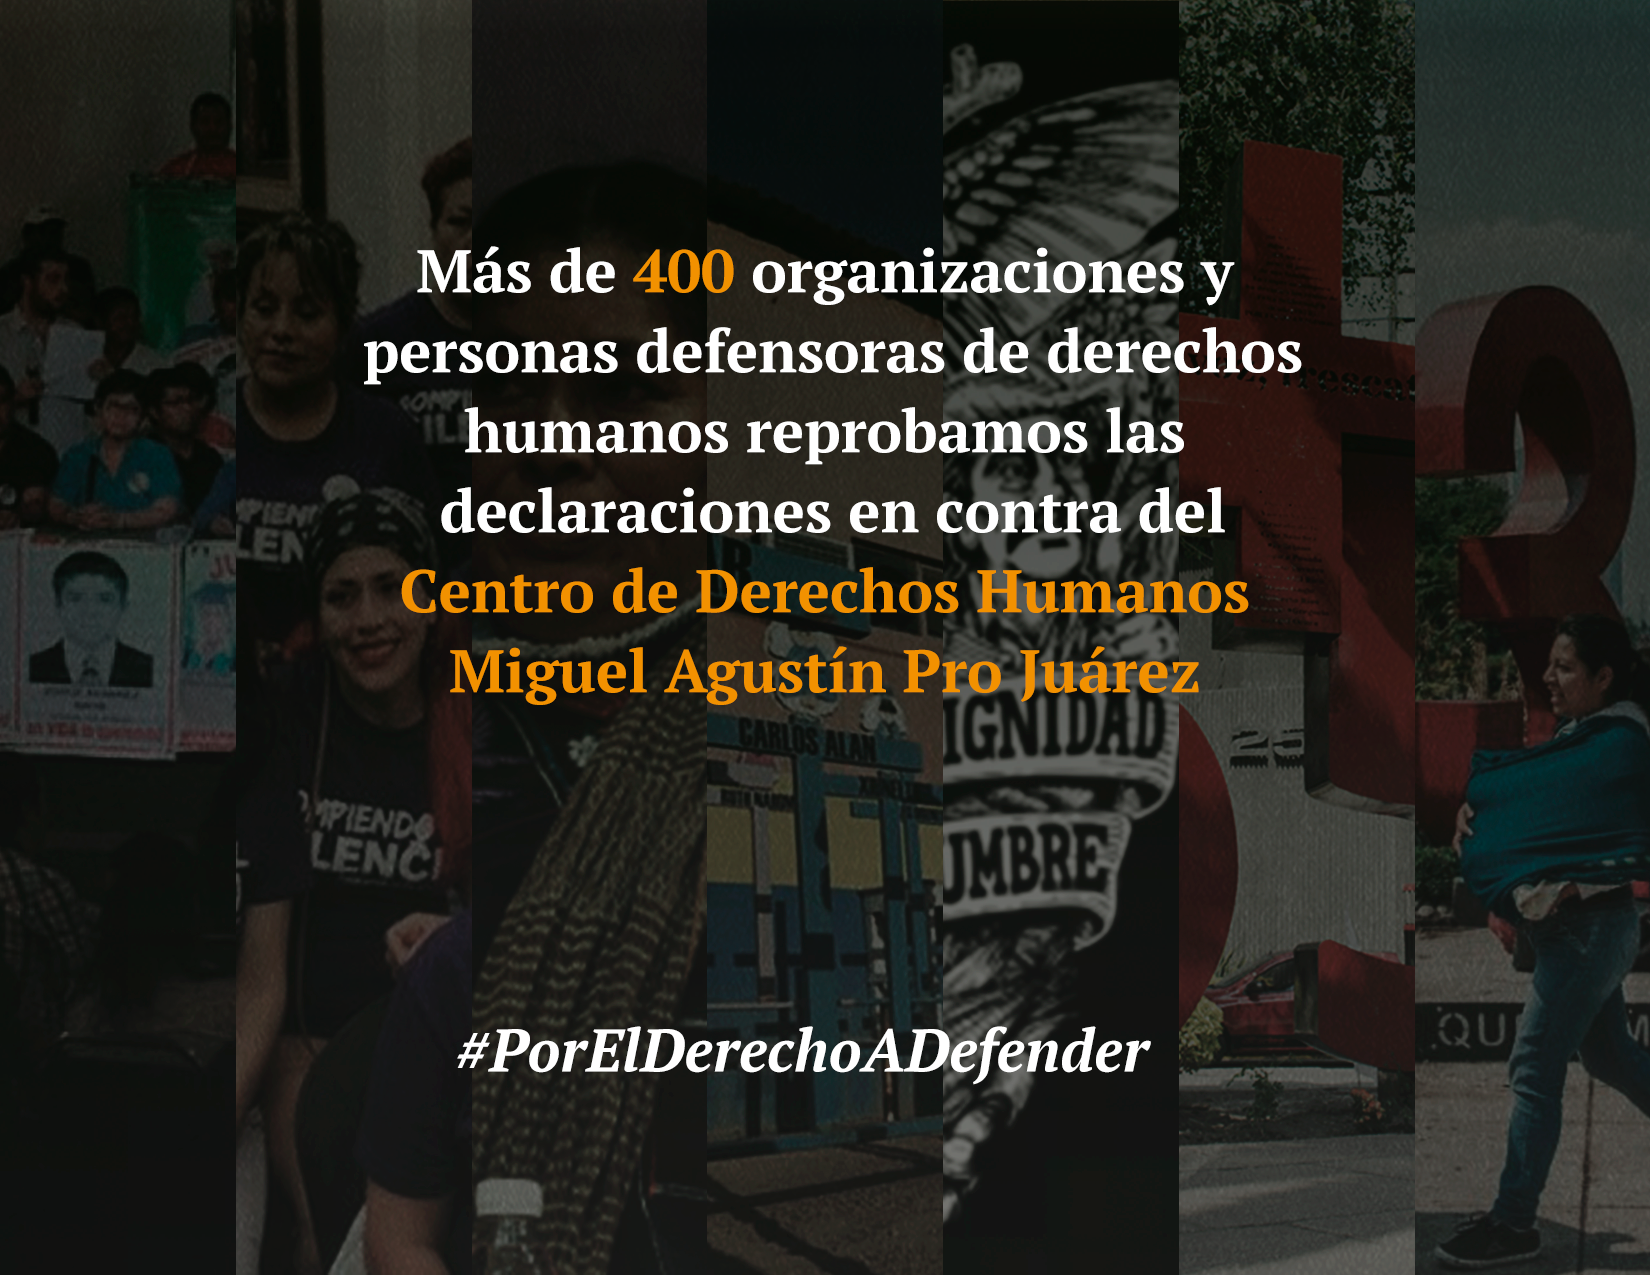 Organizaciones de derechos humanos y personas defensoras reprobamos las declaraciones en contra del Centro de Derechos Humanos Miguel Agustín Pro Juárez